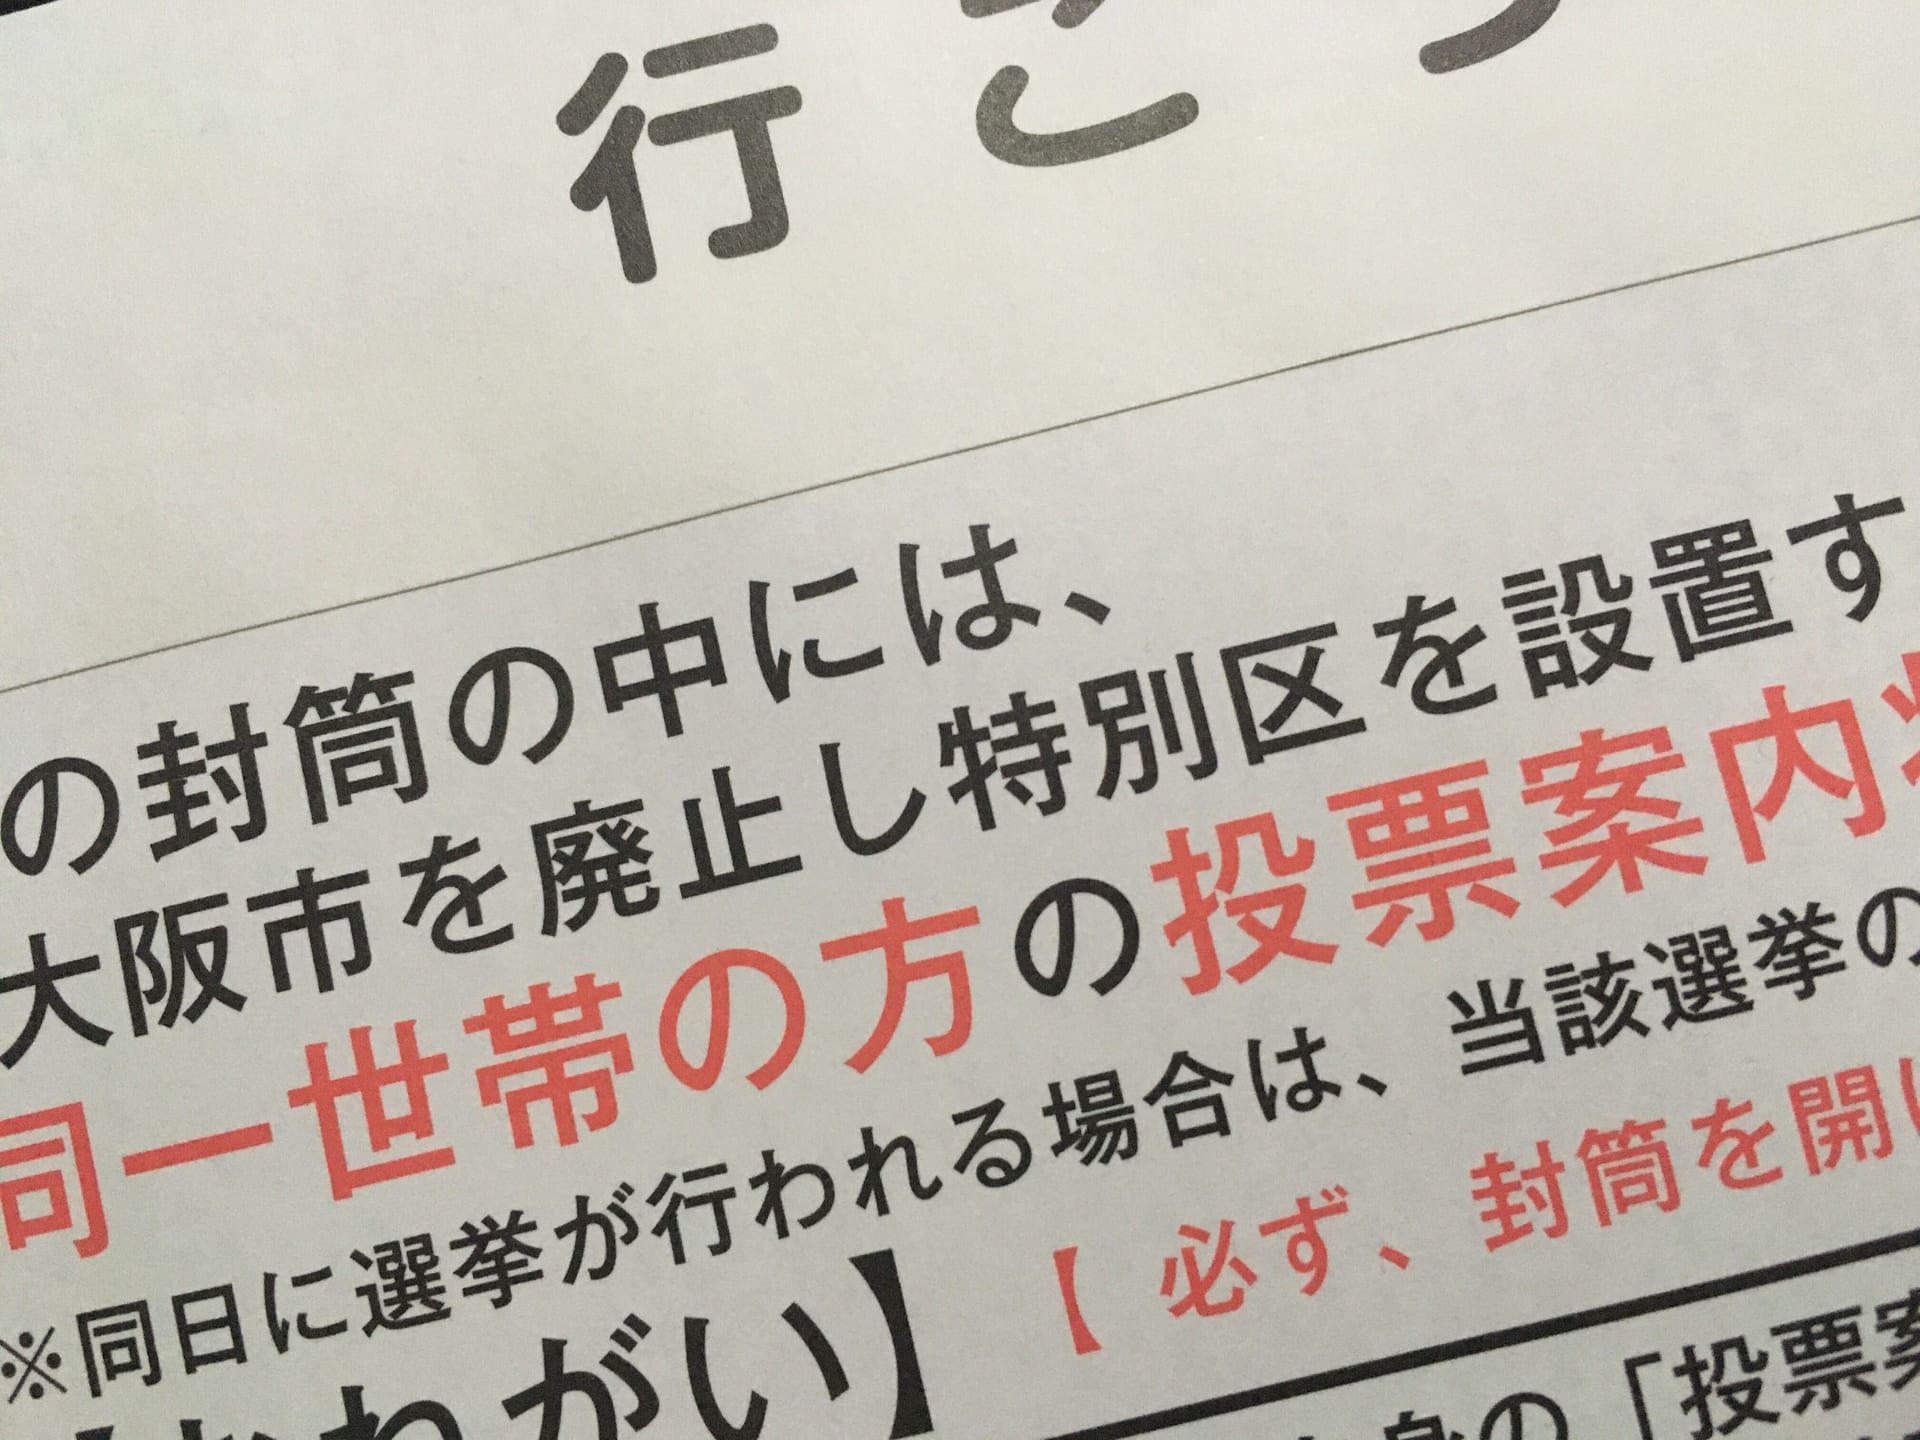 【大阪都構想】投票案内状が届きました、投票日は11月1日(日)です